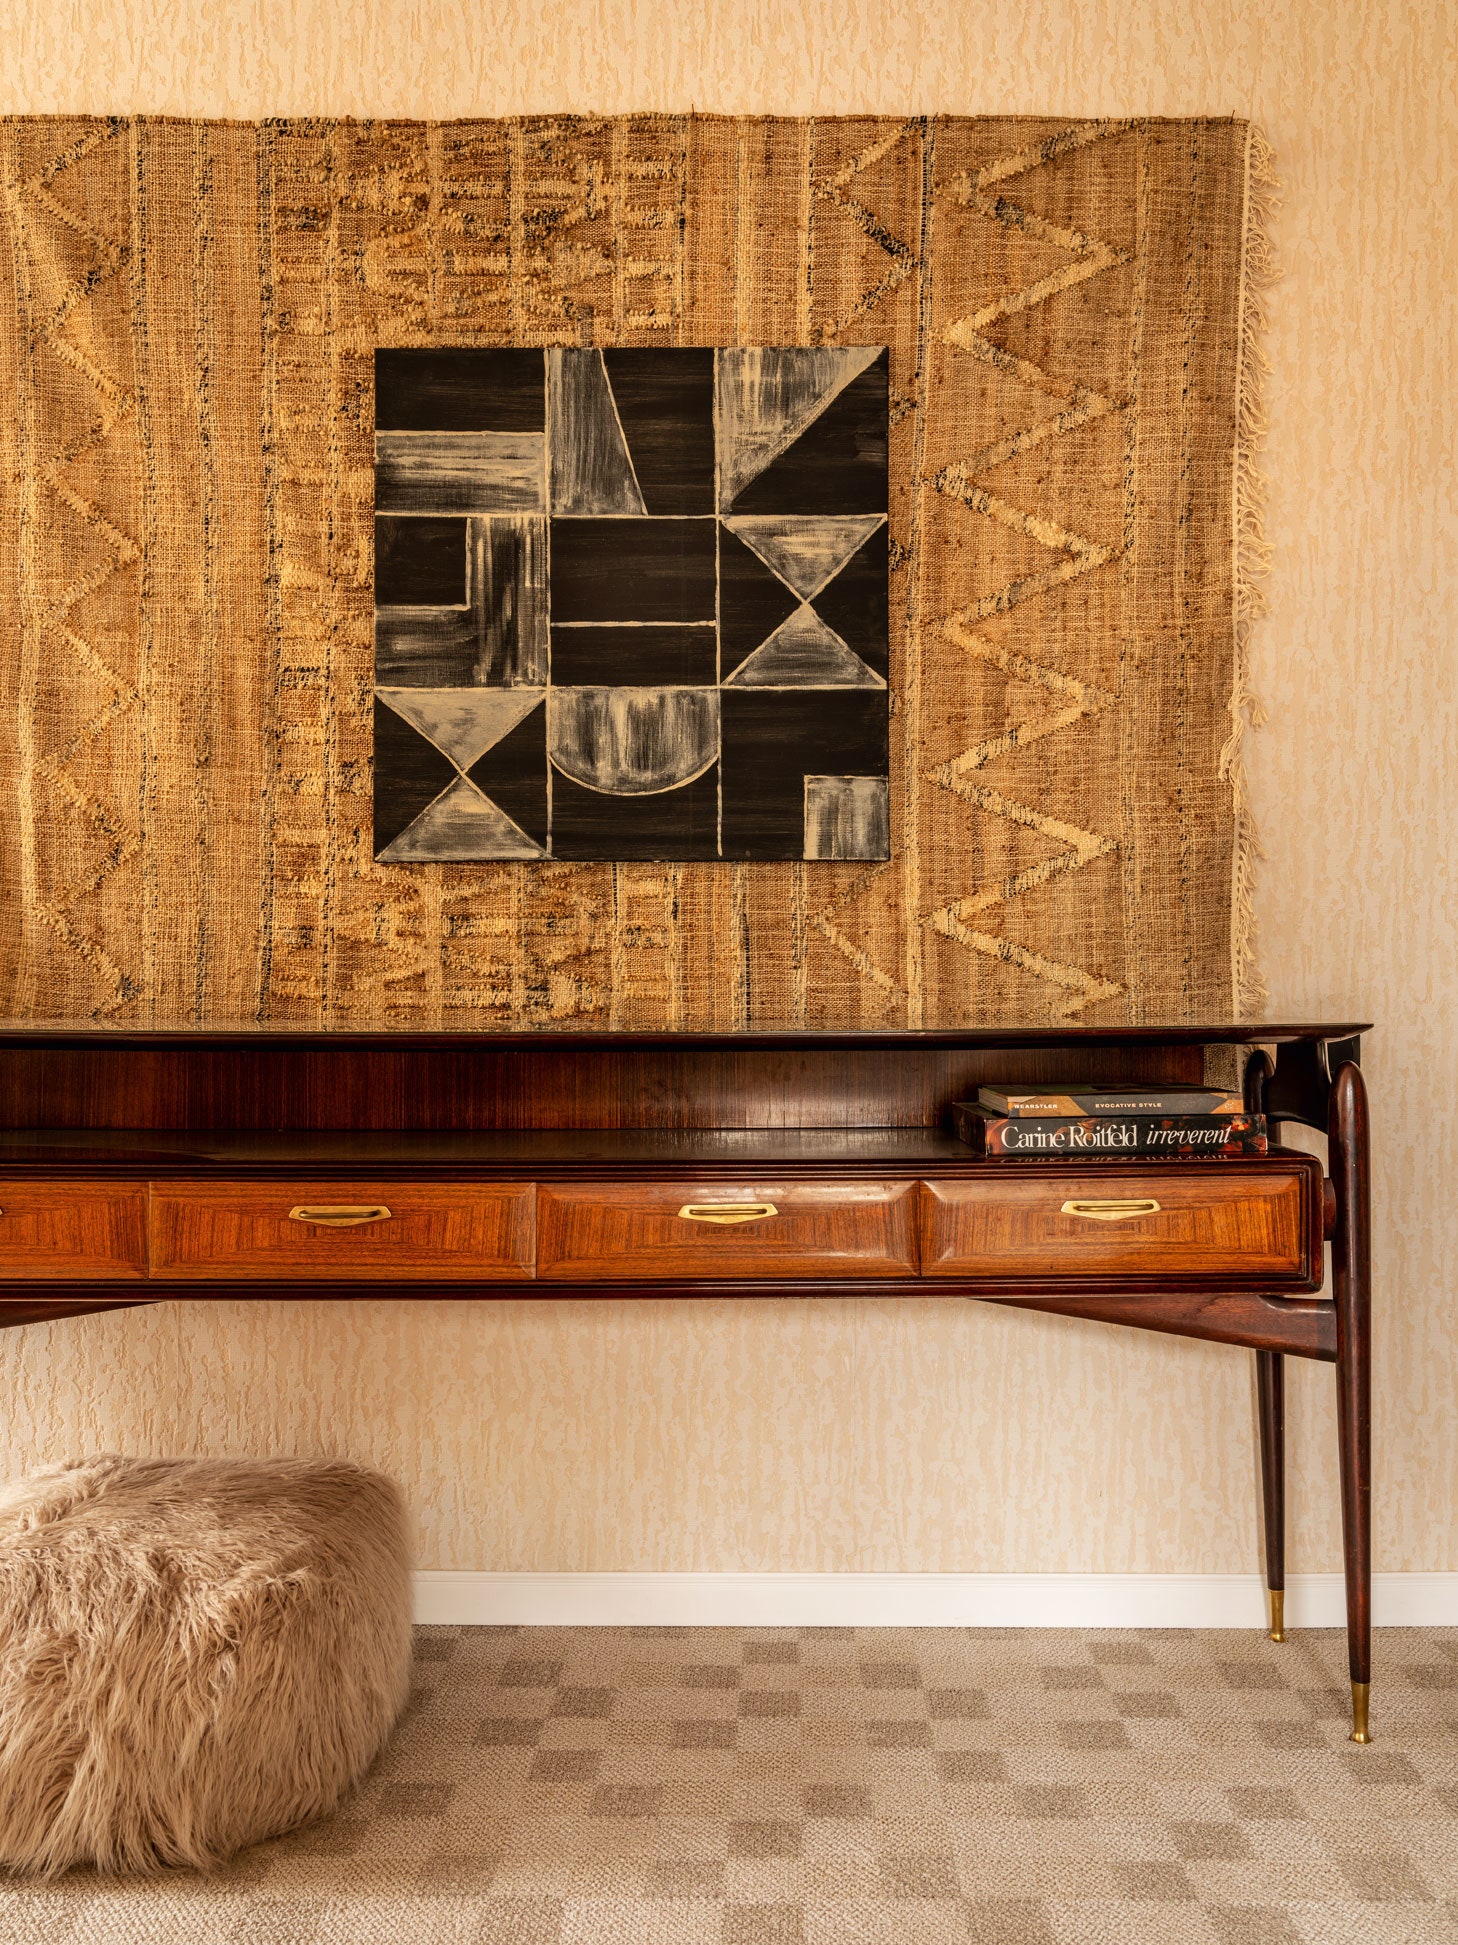 Спальня. Итальянская консоль 1950‑х годов по дизайну Витторио Дасси из галереи Correct Form на стене коврик Zara Home...